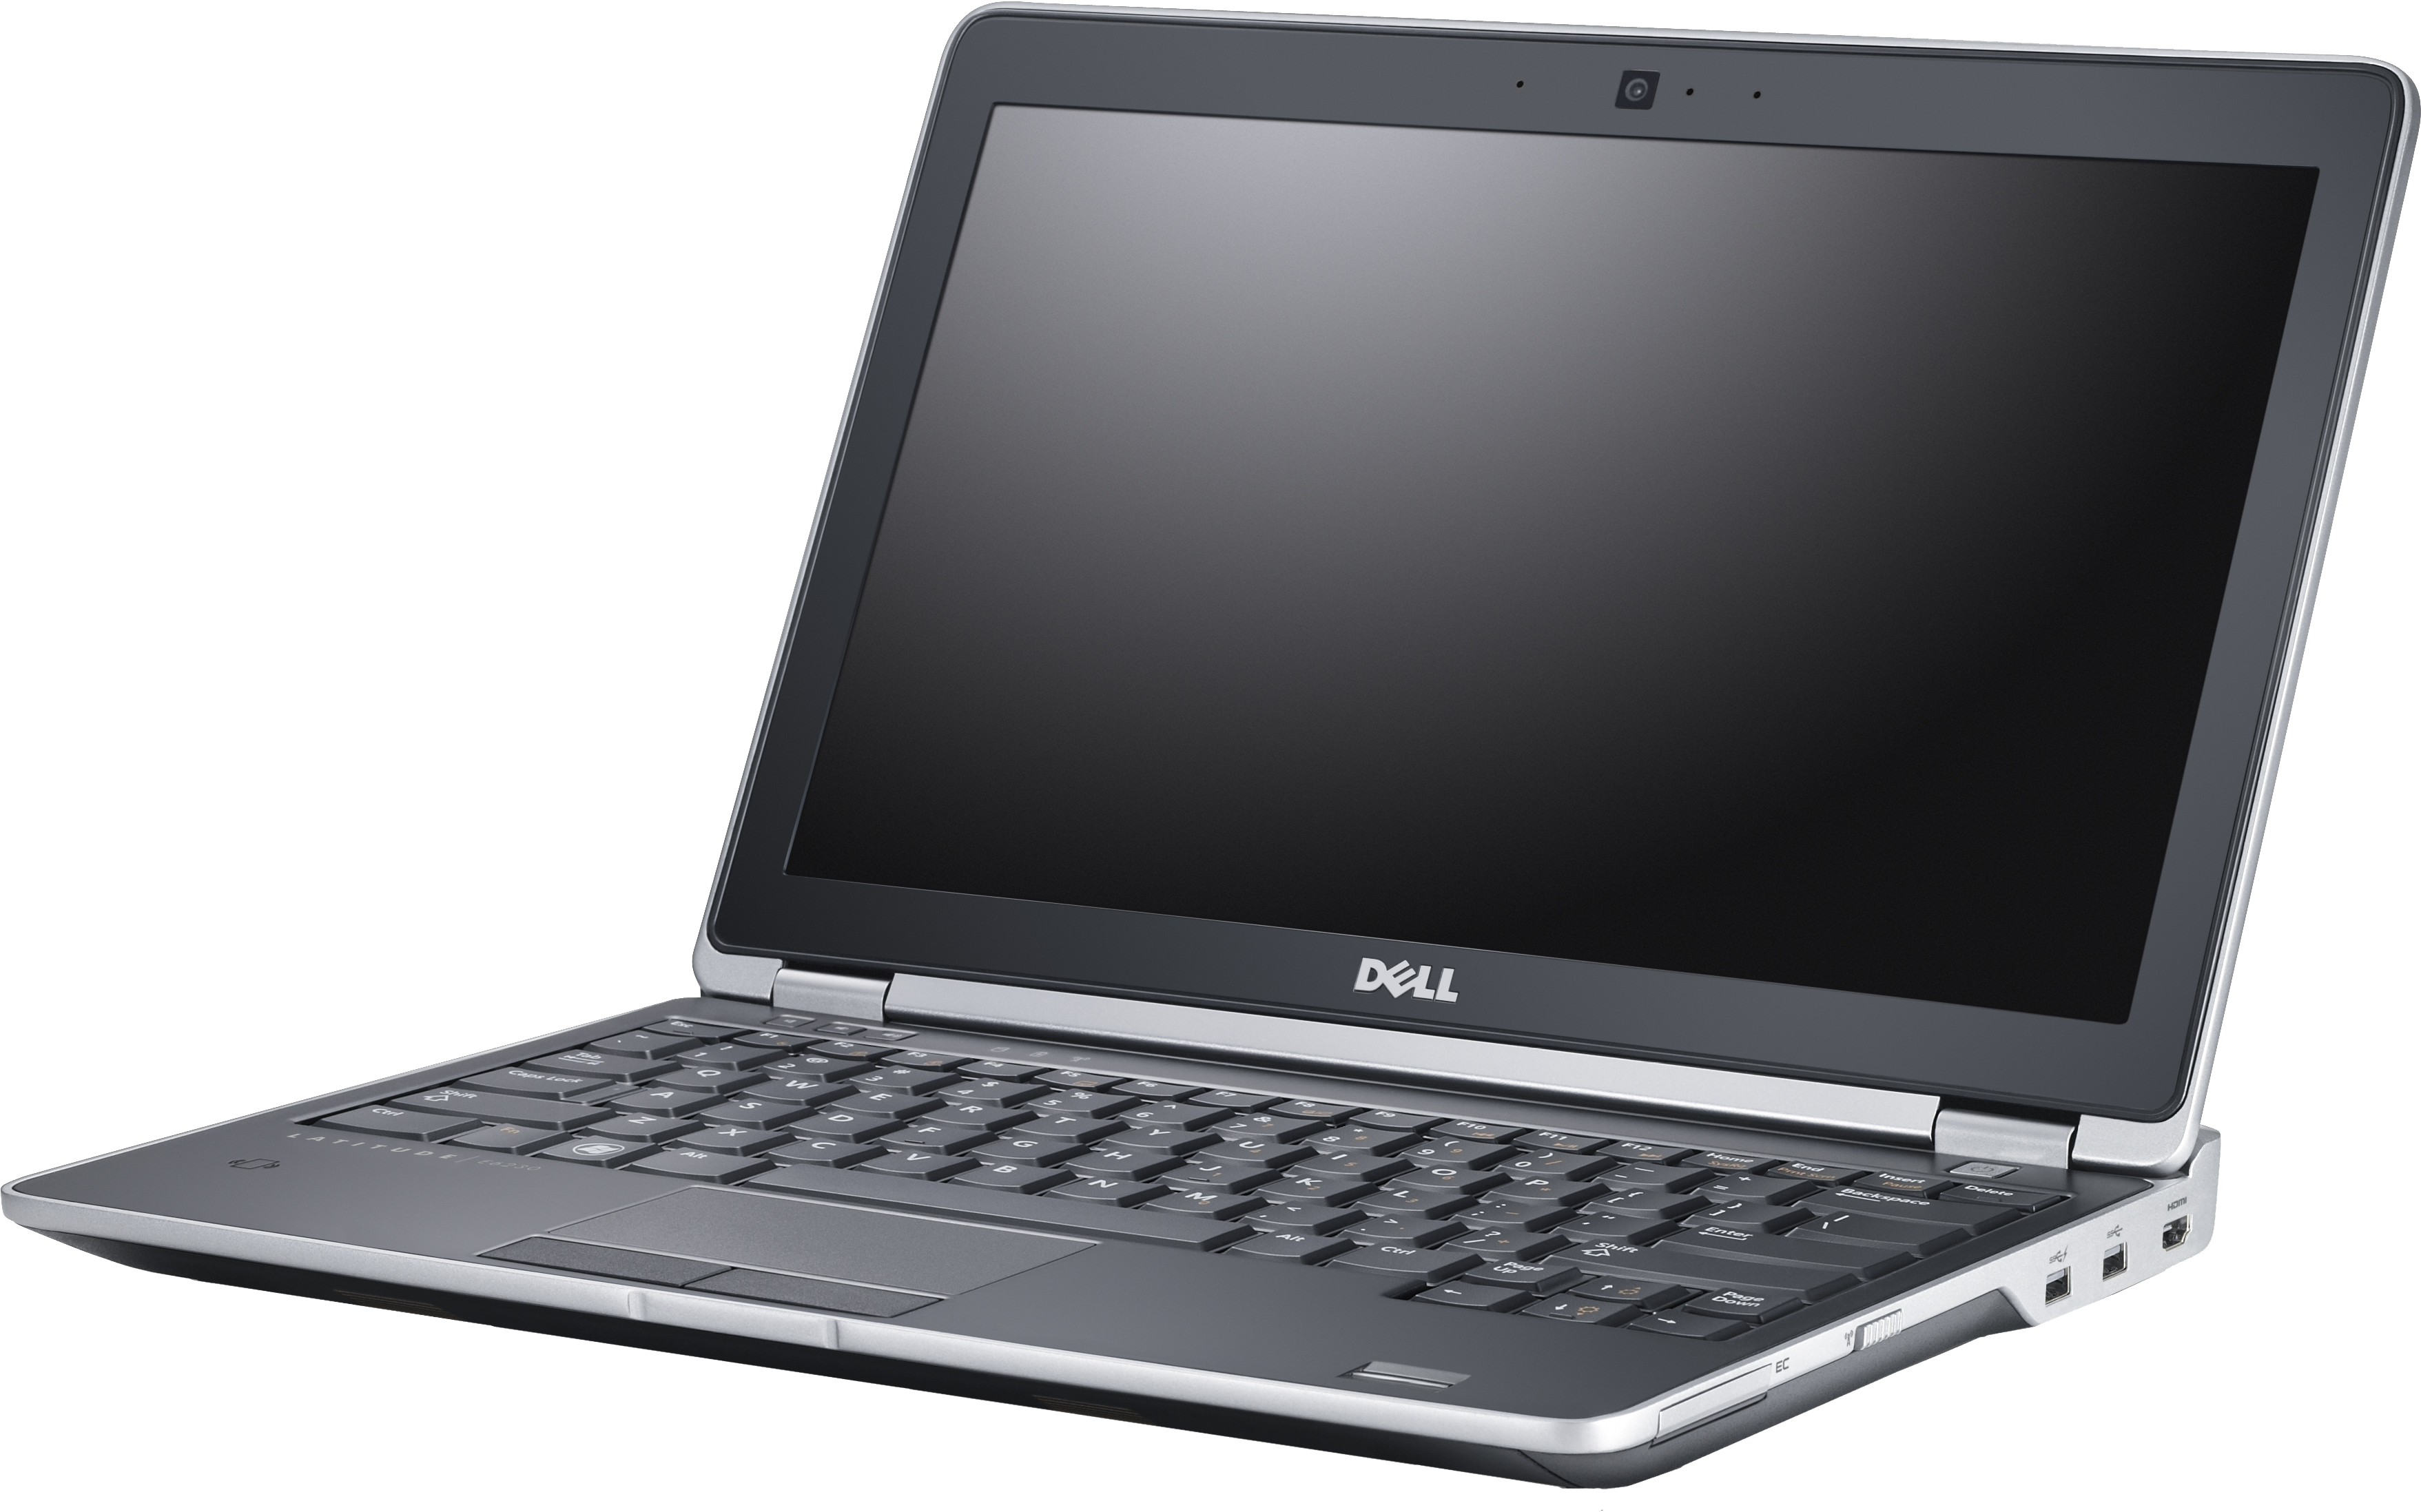 Dell Latitude Laptop - Dell Latitude E6430 Clipart (3514x2195), Png Download